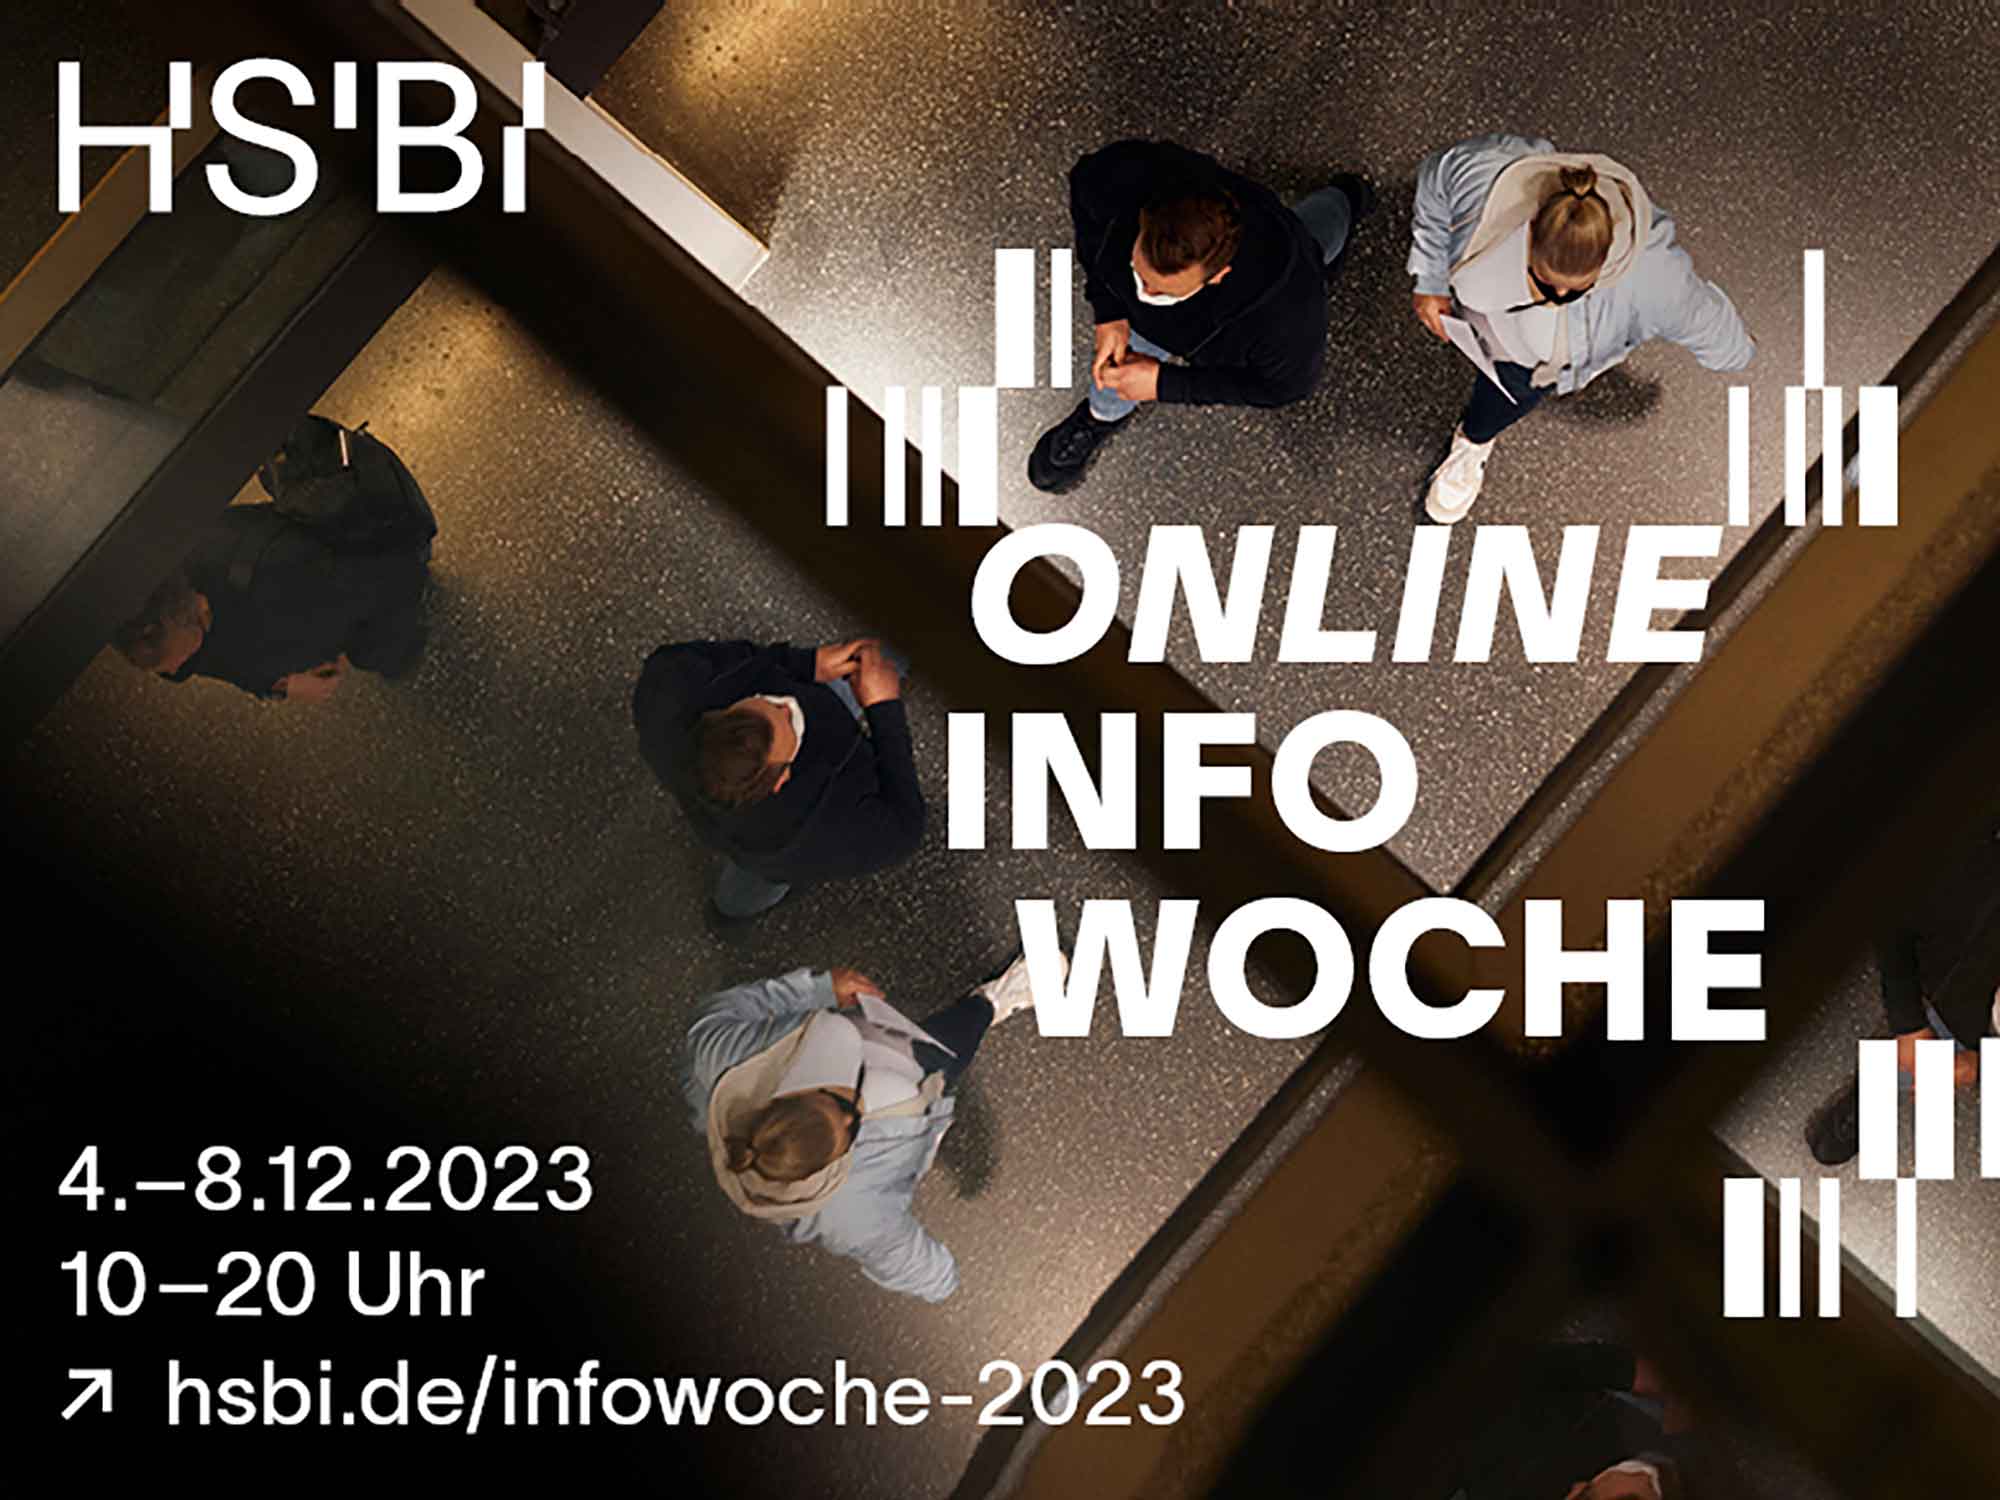 Online Infowoche der Hochschule Bielefeld (HSBI), 4. bis 8. Dezember 2023